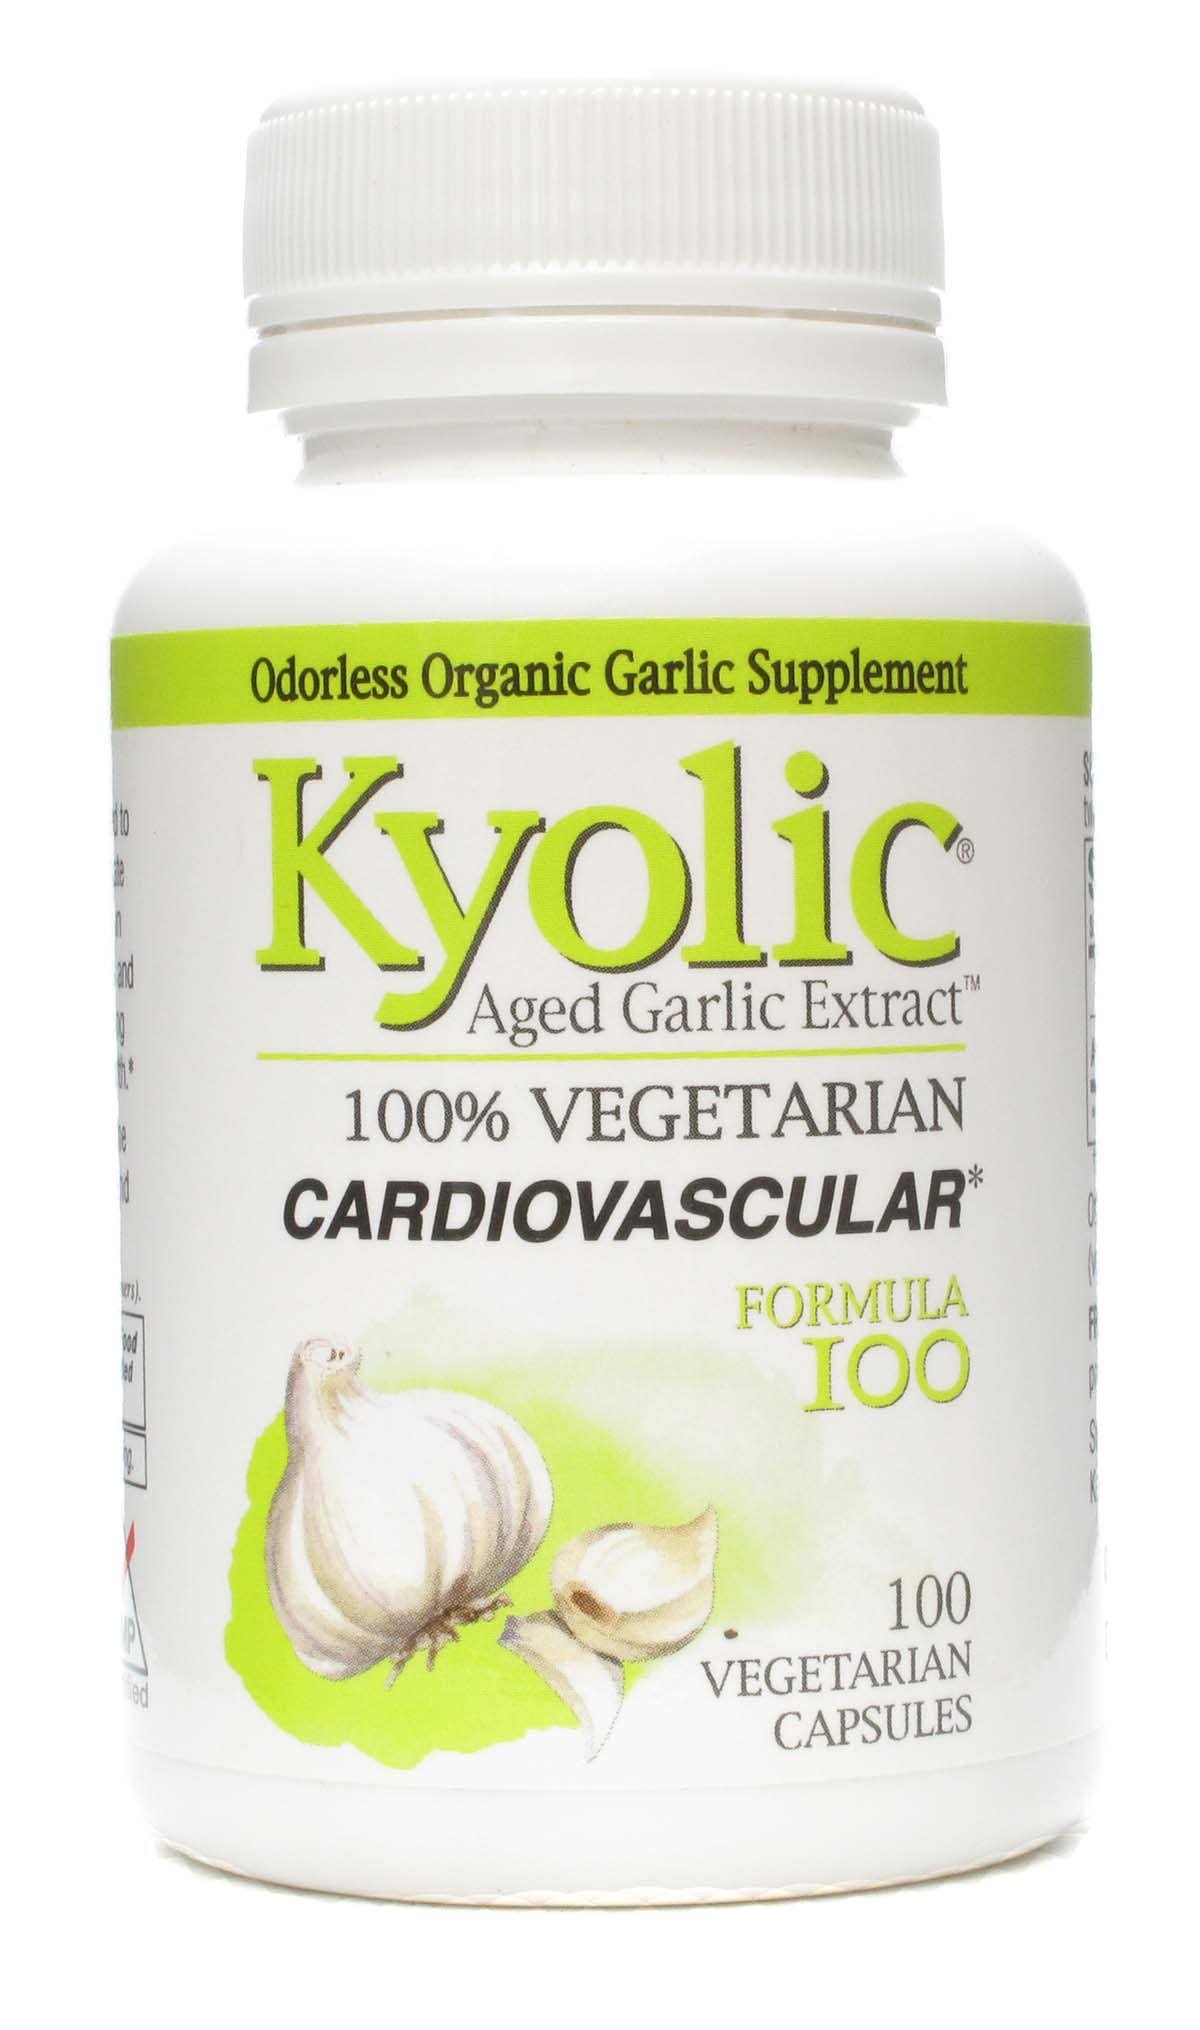 Kyolic Garlic Formula 100 Original Vegetarian Formula - 100 Vegetarian Capsules